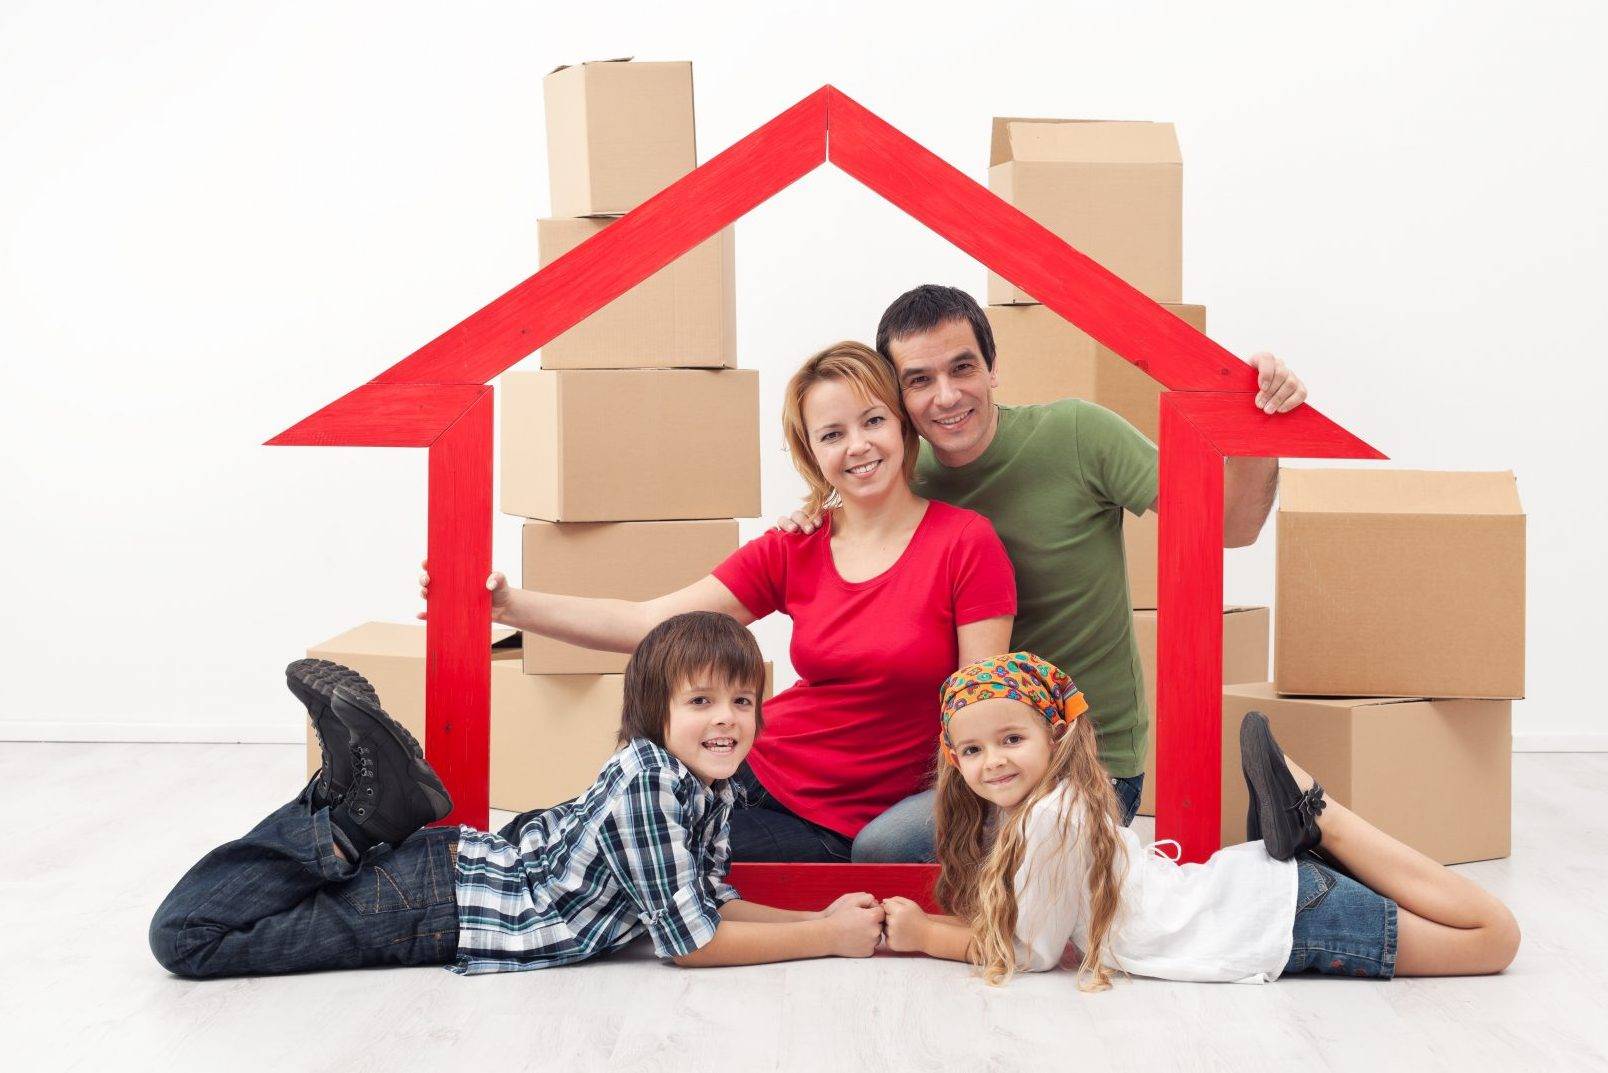 Кредит на квартиру: что выгоднее – ипотека или потребительский кредит